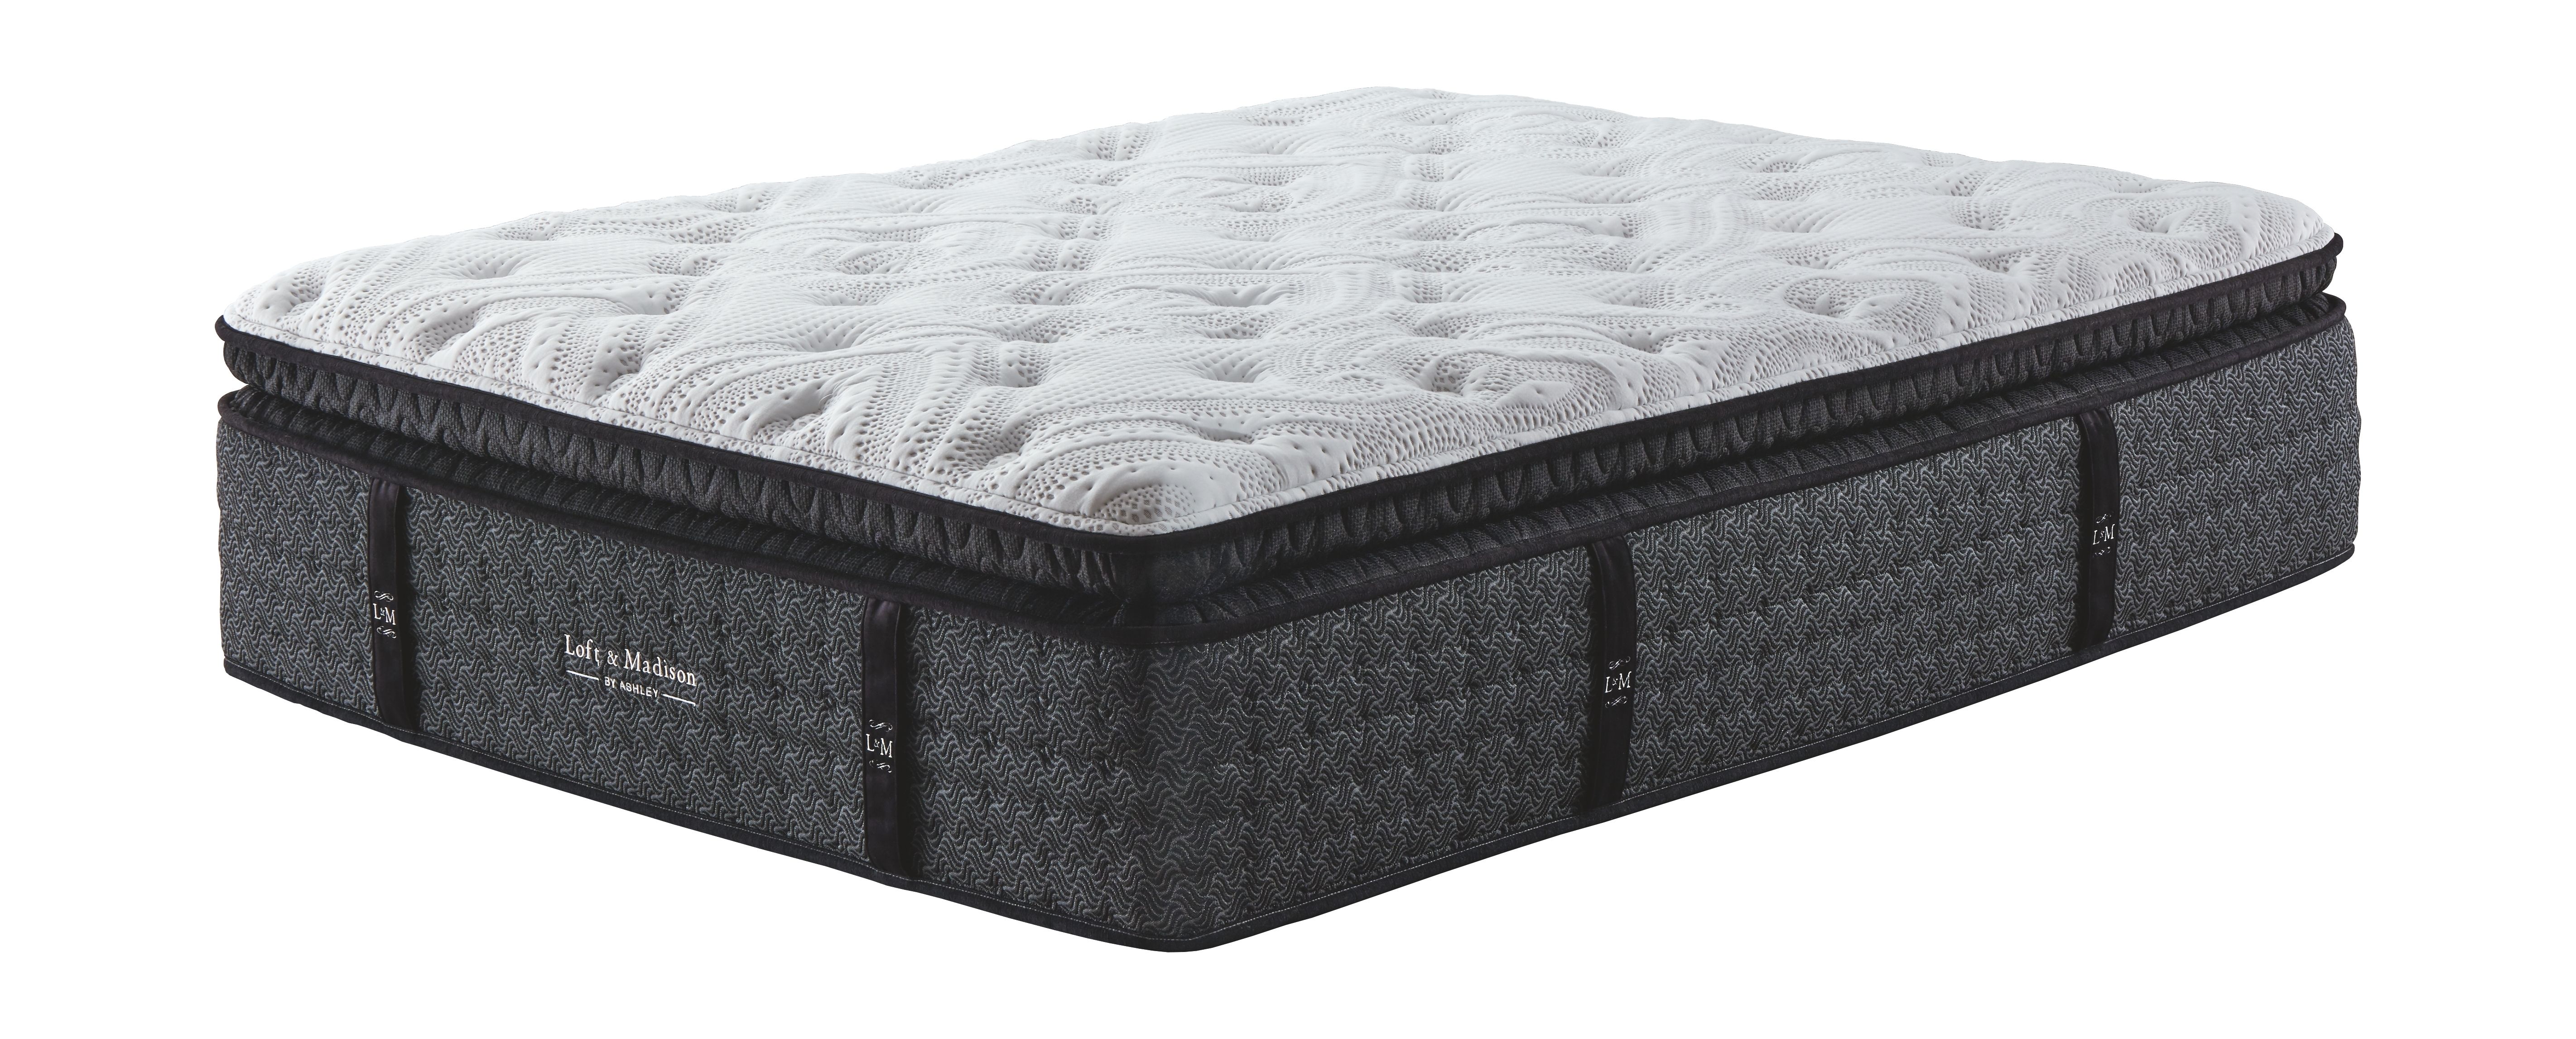 loft and madison ultra plush pt queen mattress